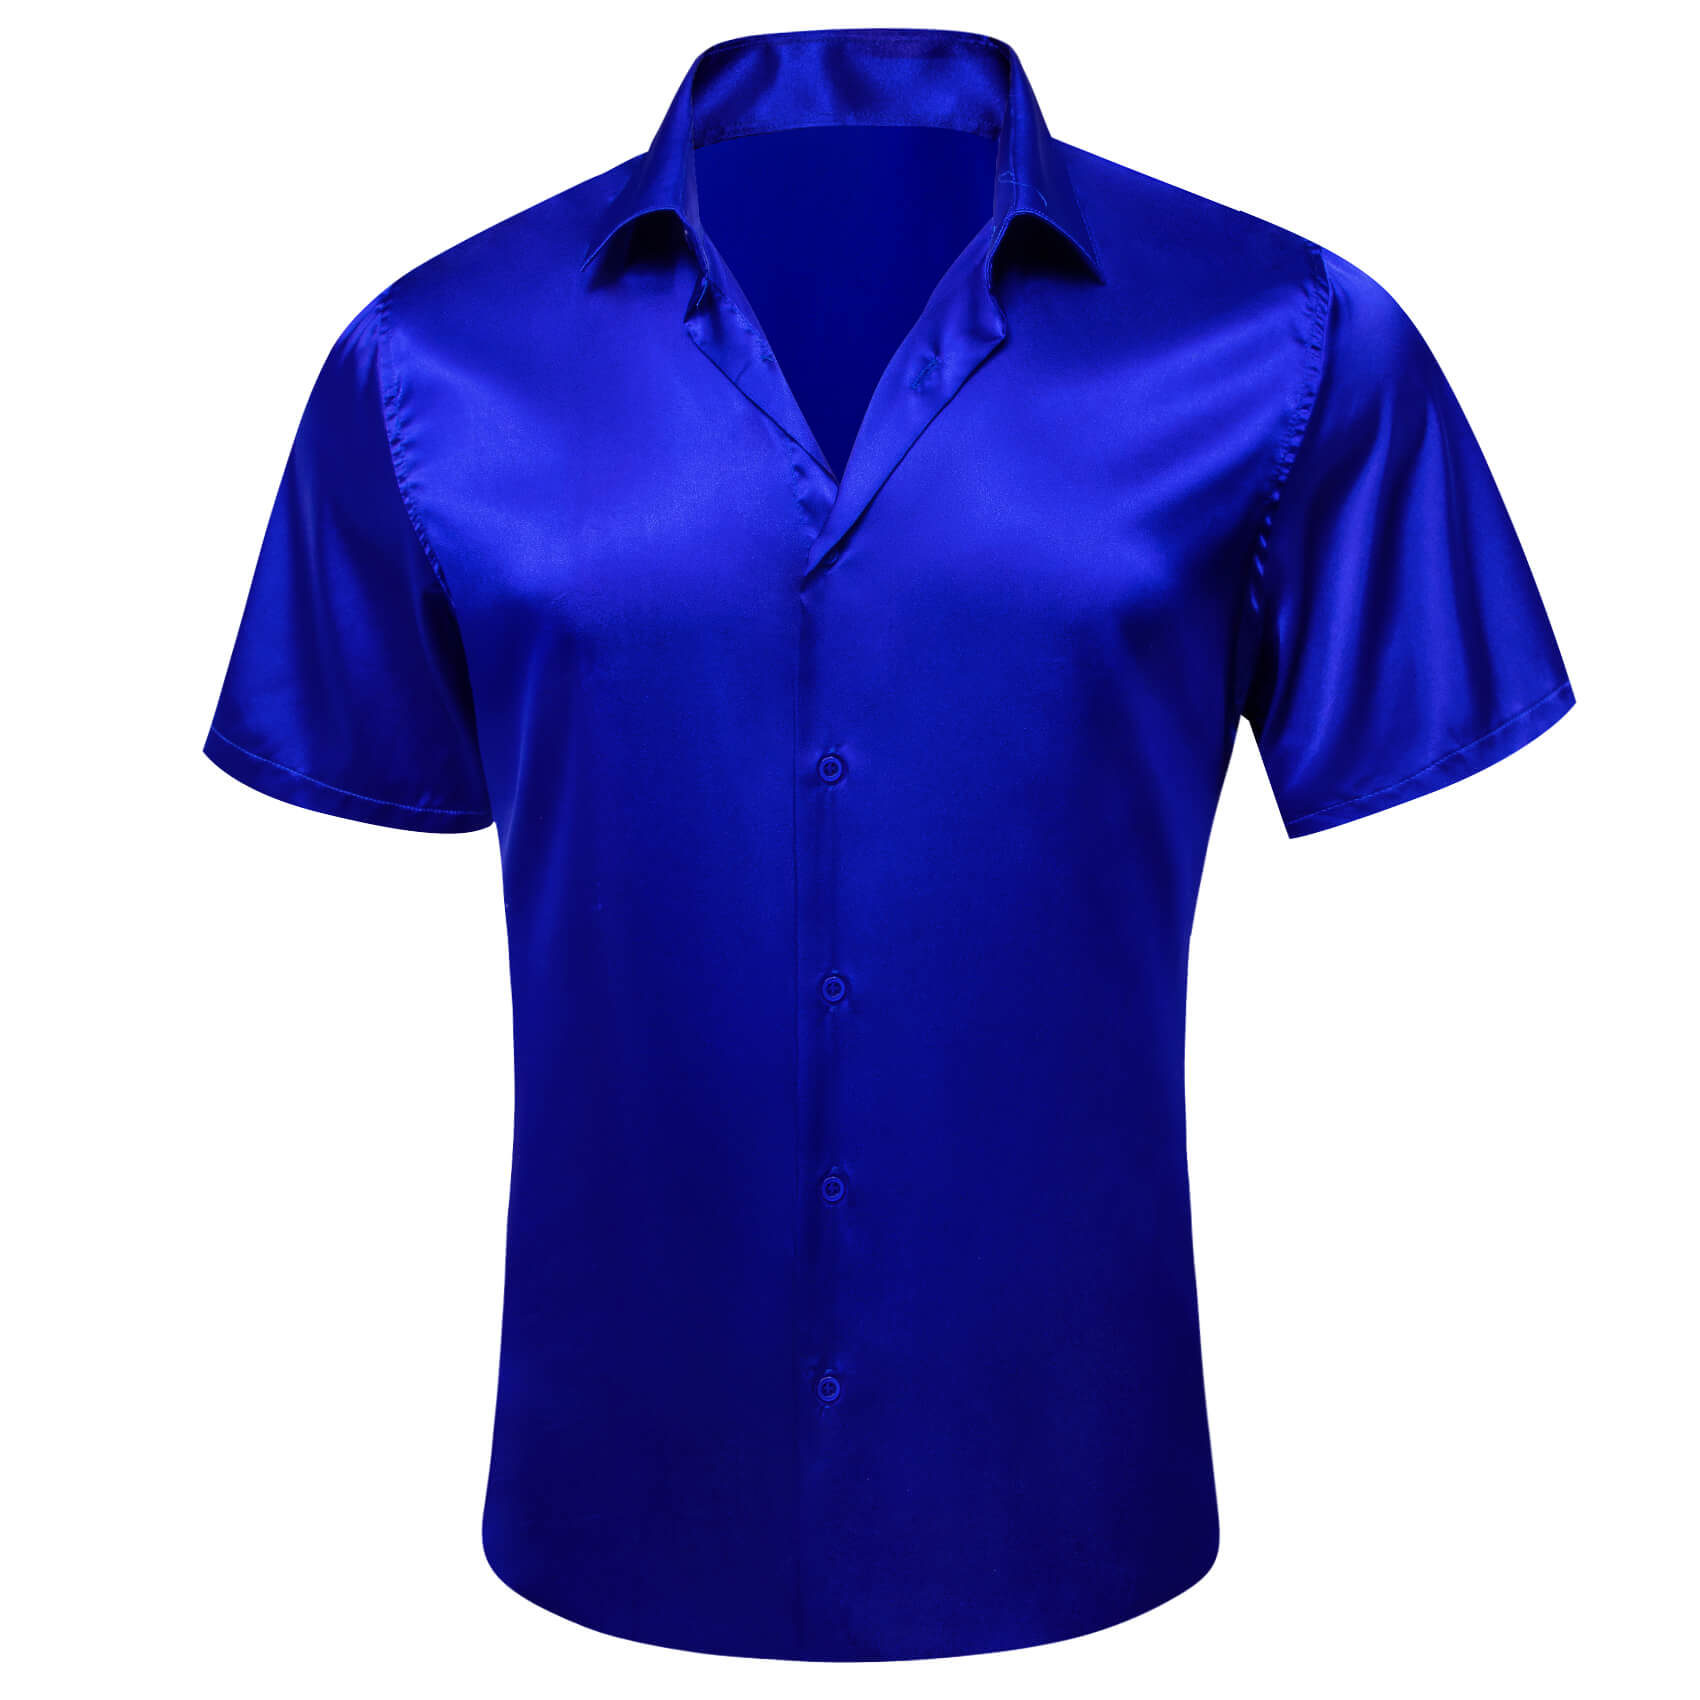 Barry Wang Short Sleeve blue designer shirt